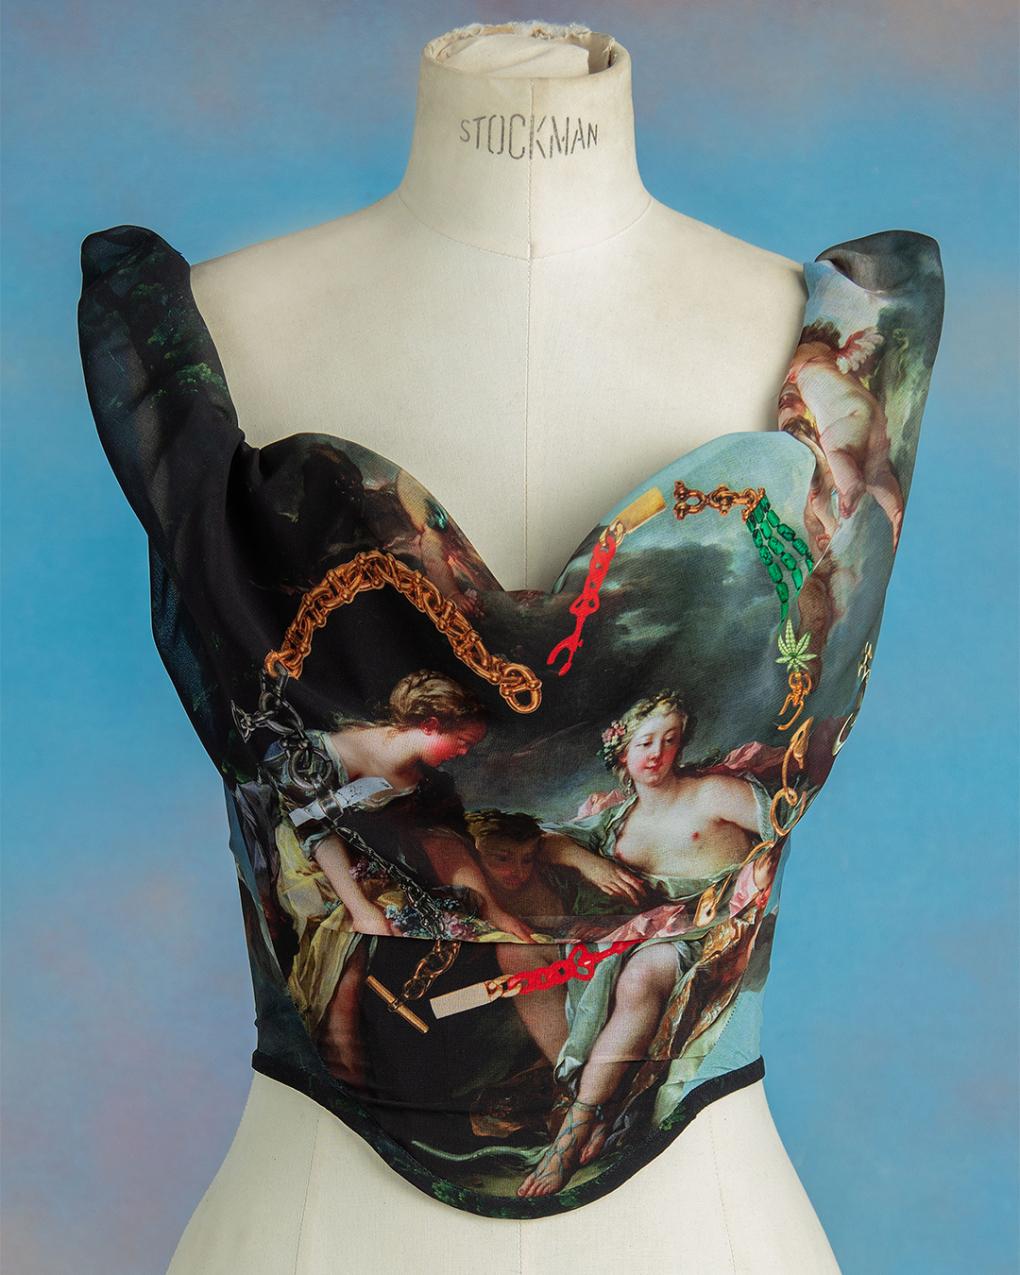 vivienne westwood exposition corsets paris